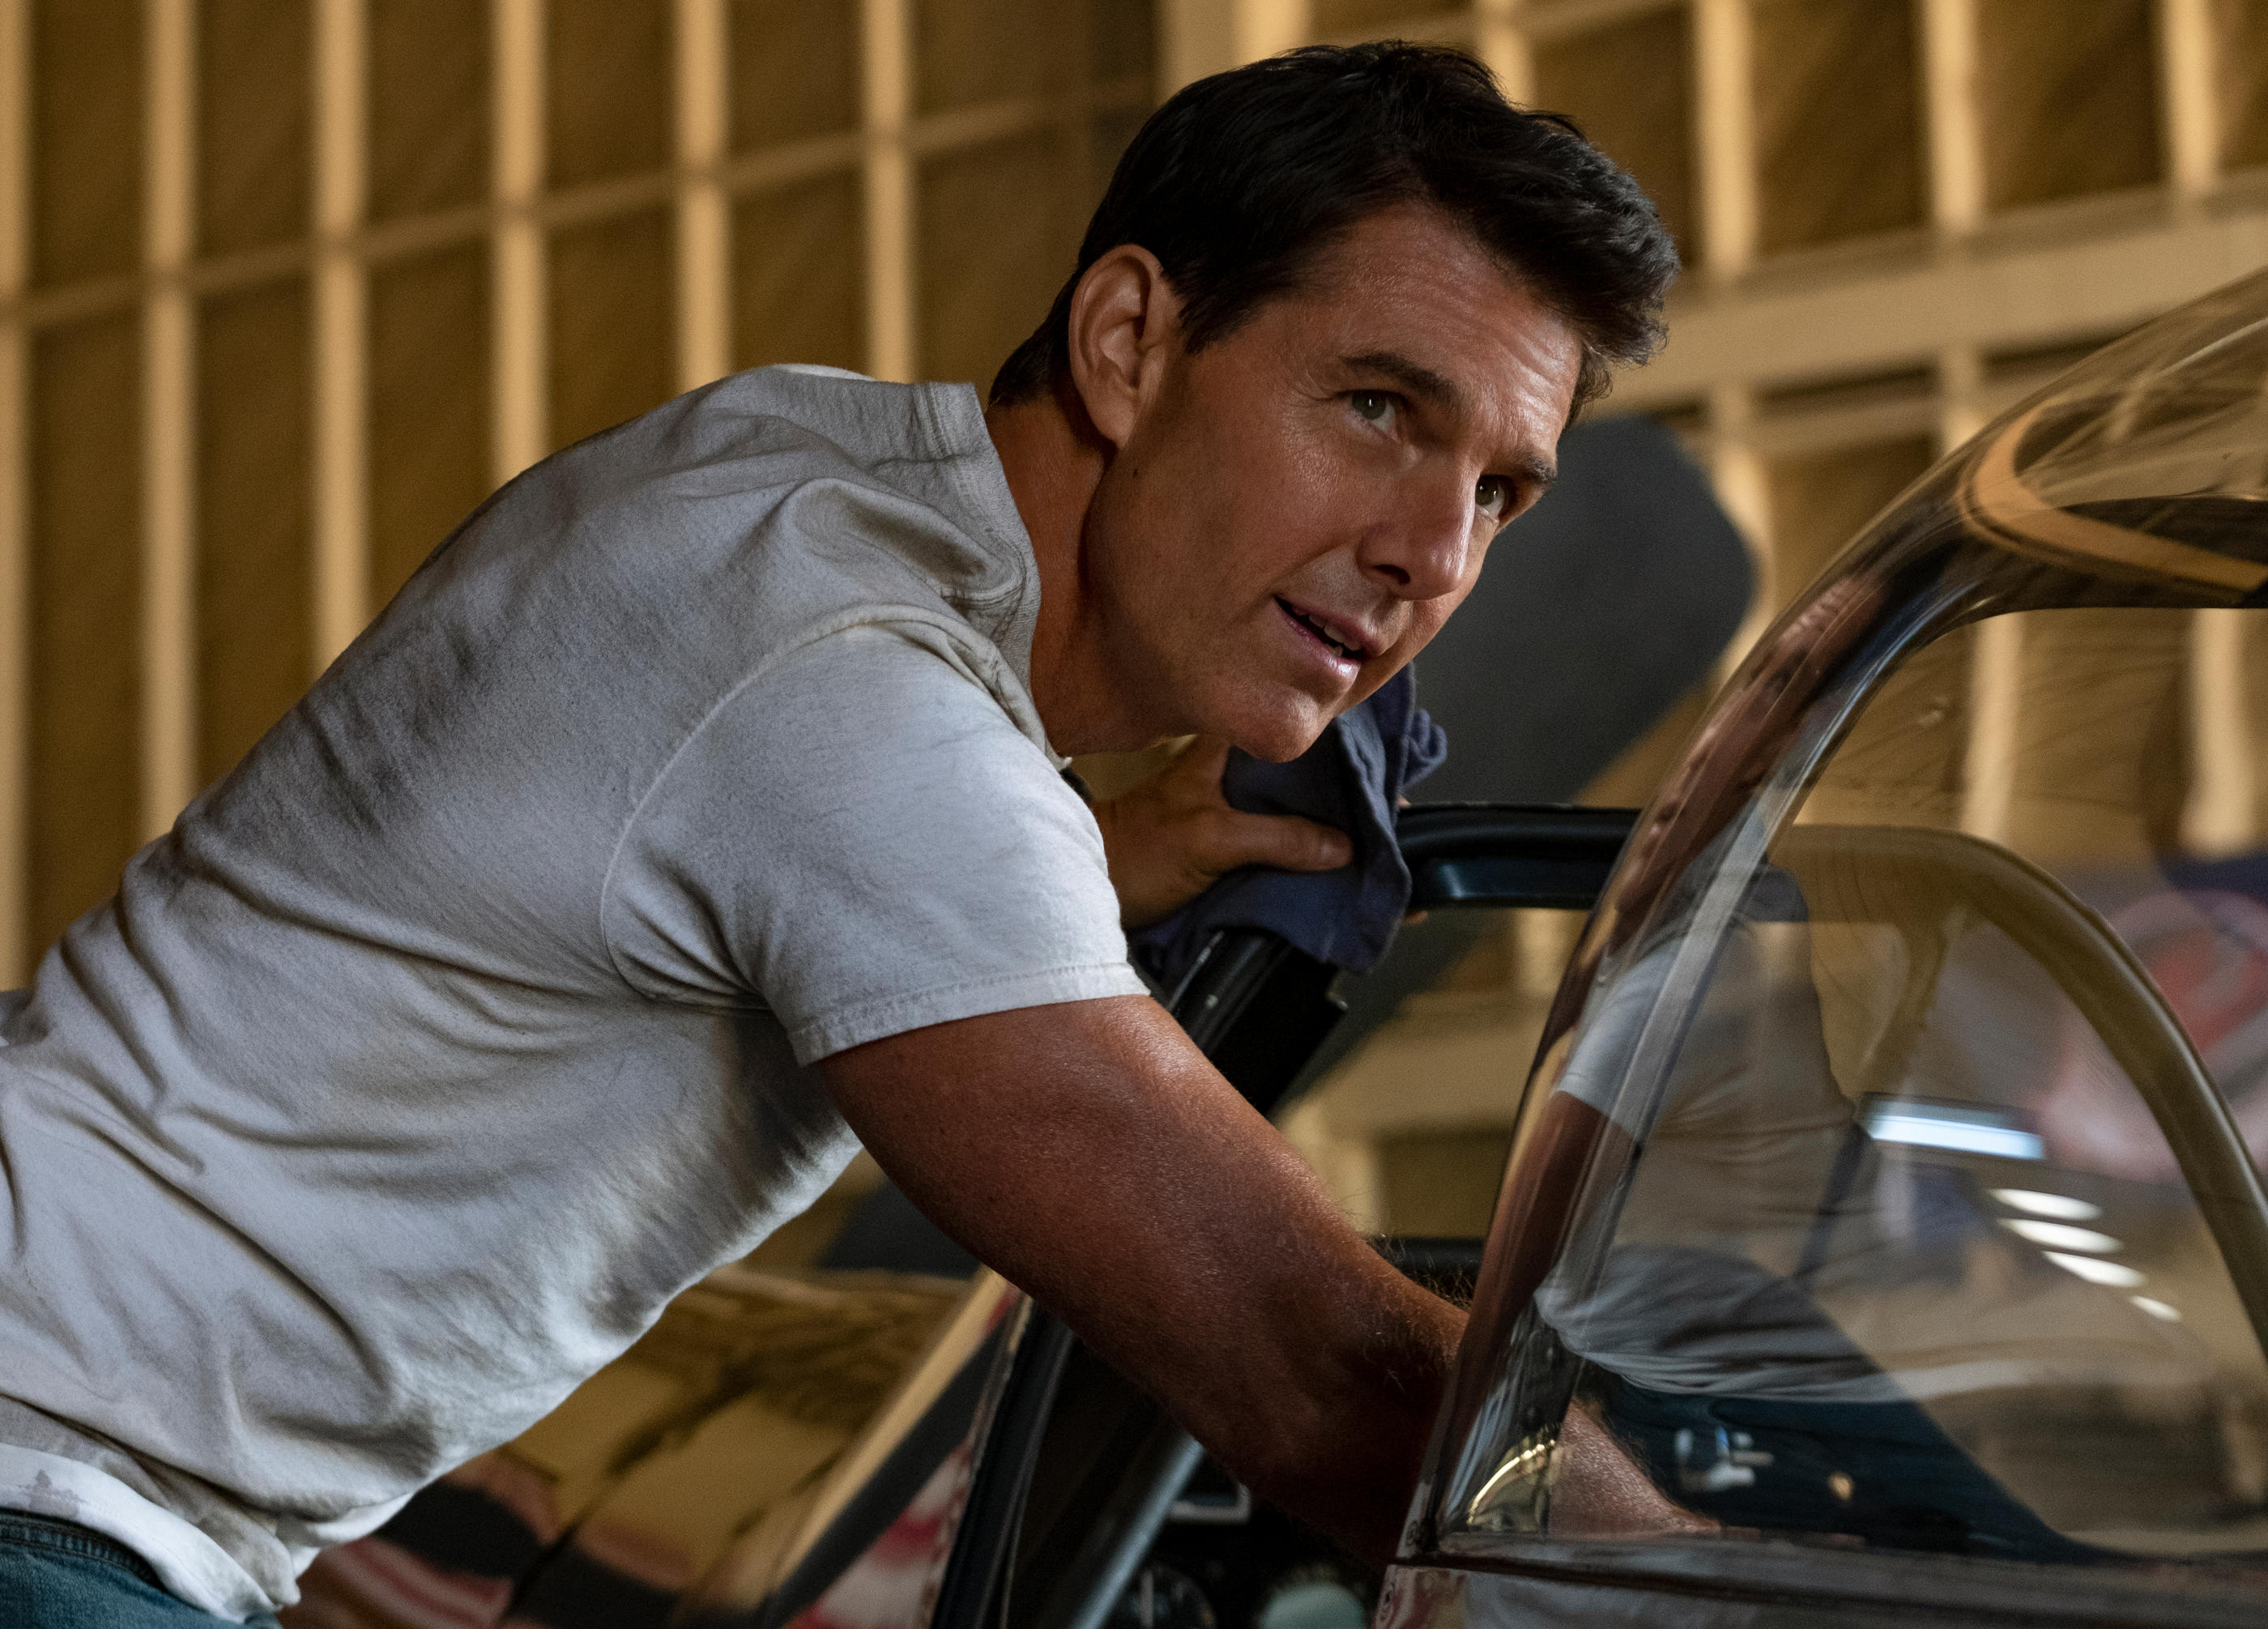 Les secrets tout simples de Tom Cruise pour rester jeune à 61 ans